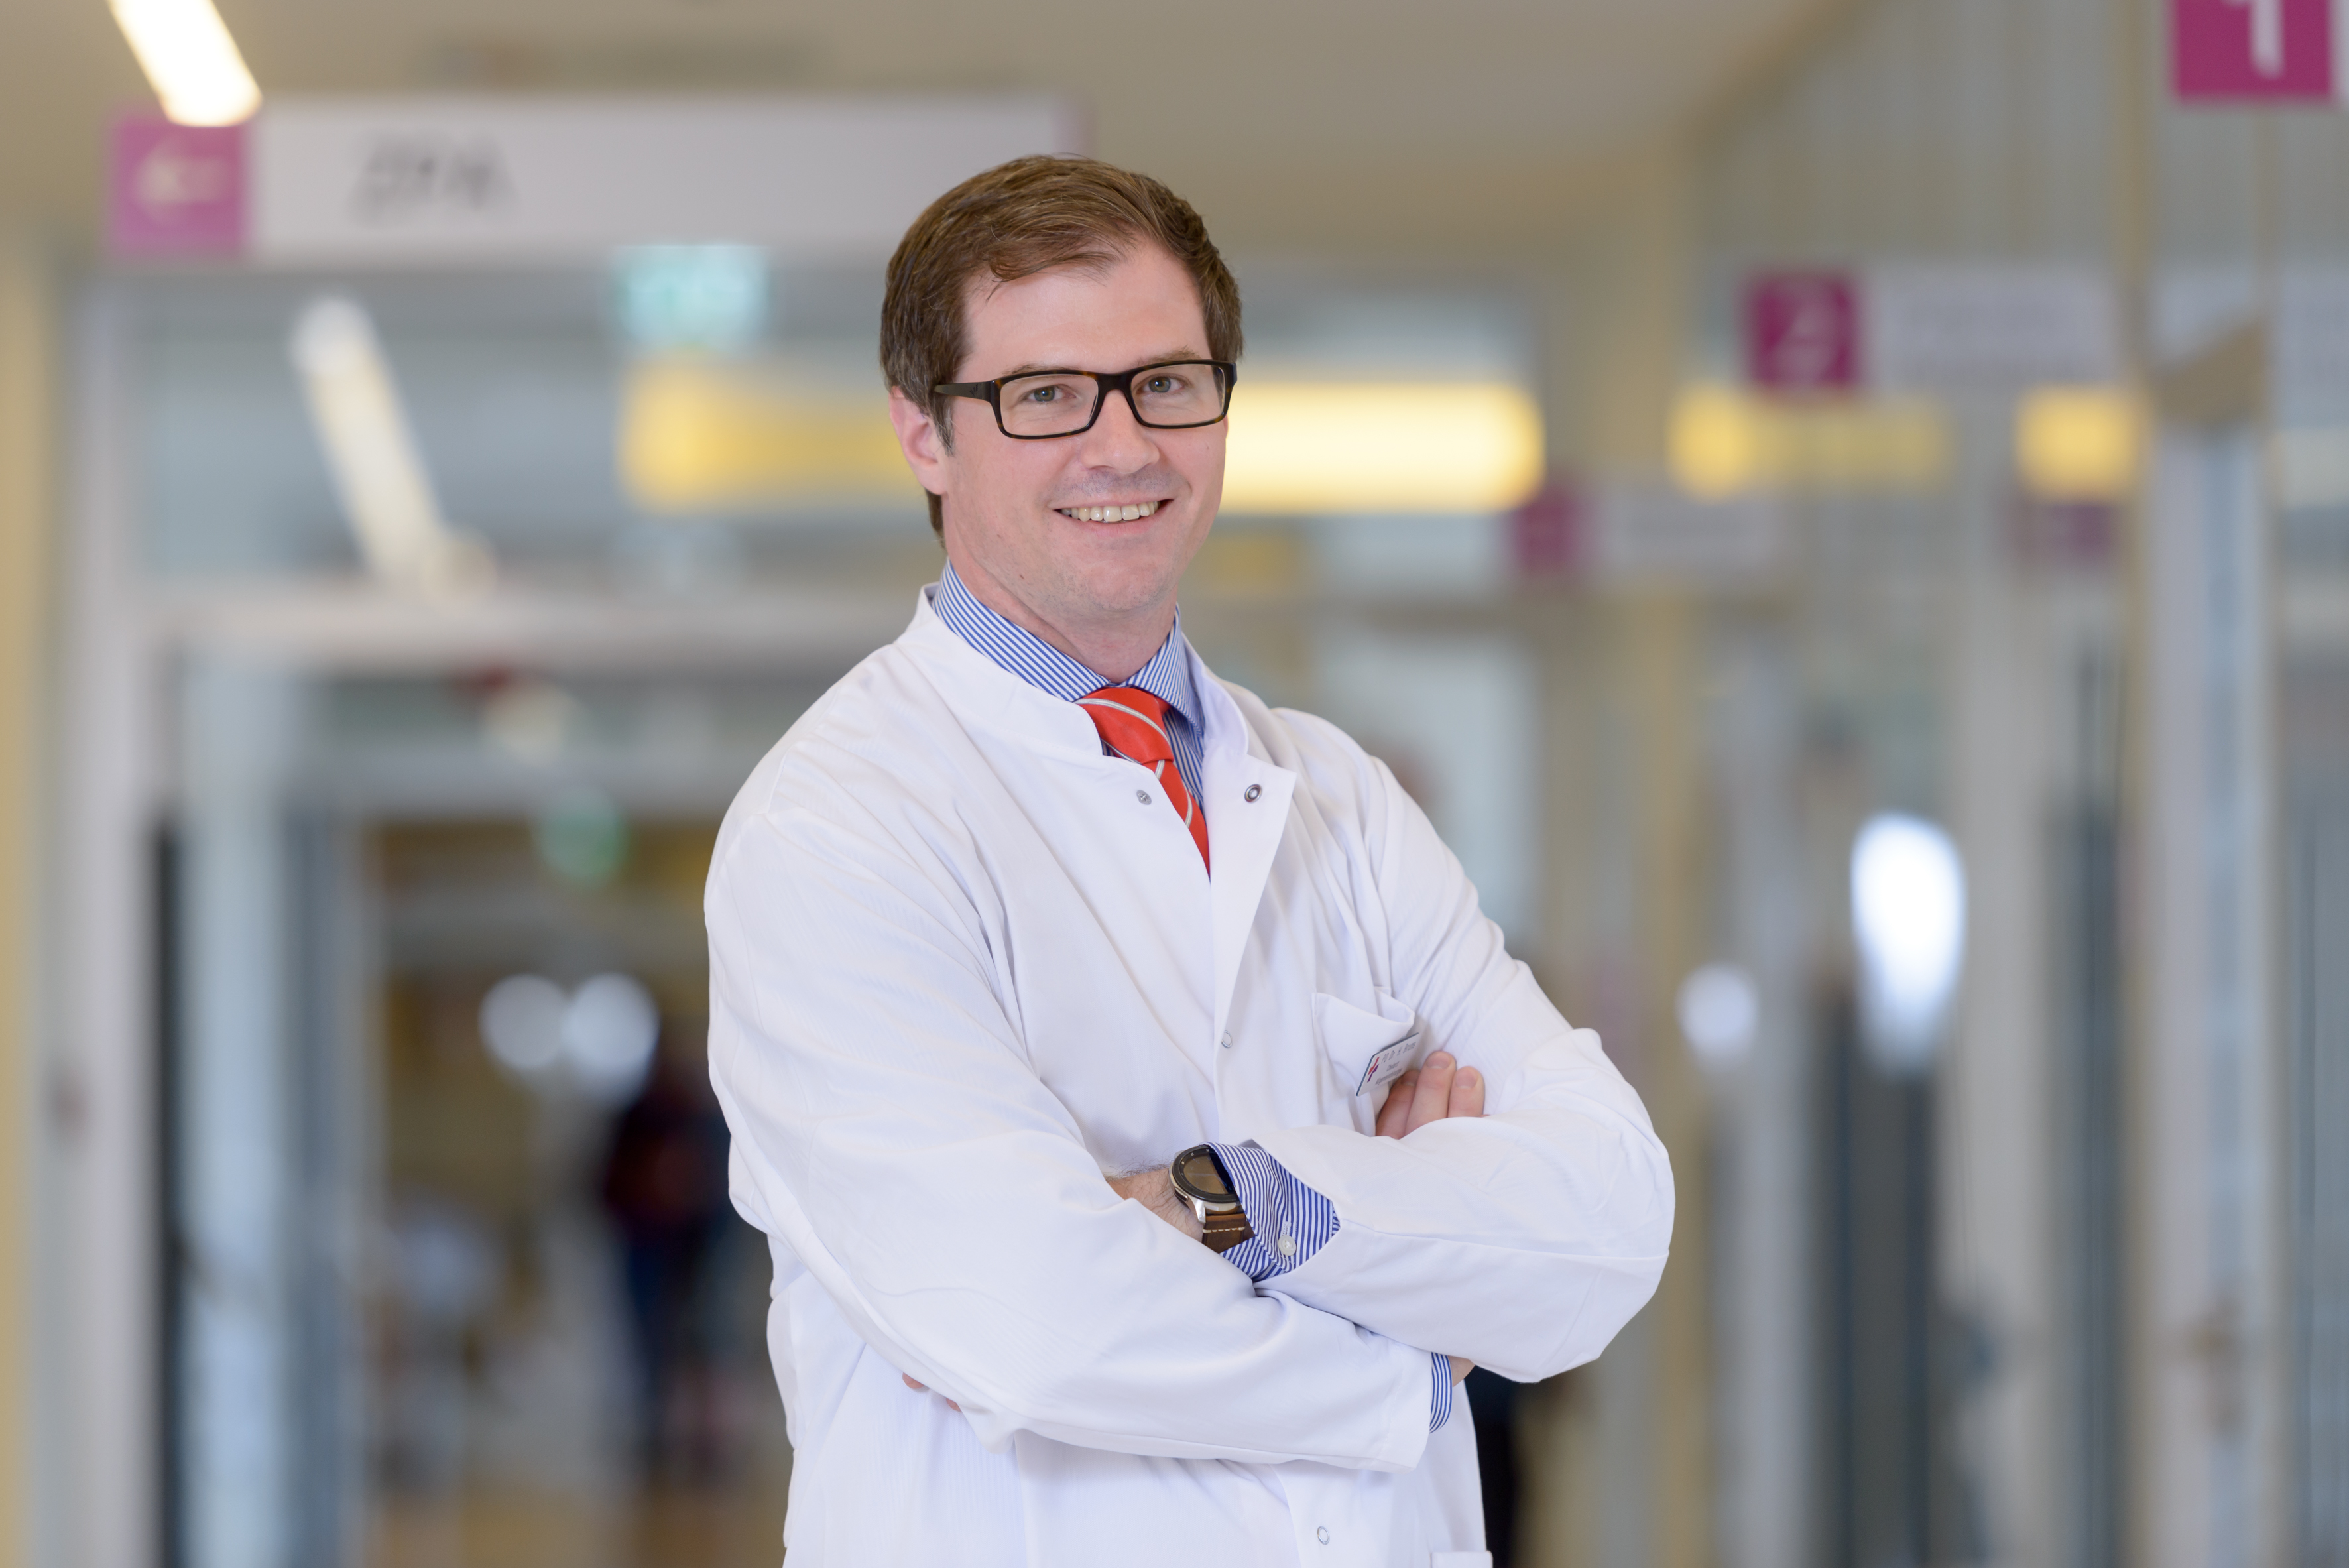 PD Dr. med. Helge Bruns, Chefarzt in der Klinik für Allgemein-, Viszeral-, Thorax- und Gefäßchirurgie am Klinikum Bremerhaven-Reinkenheide (Foto: Antje Schimanke)